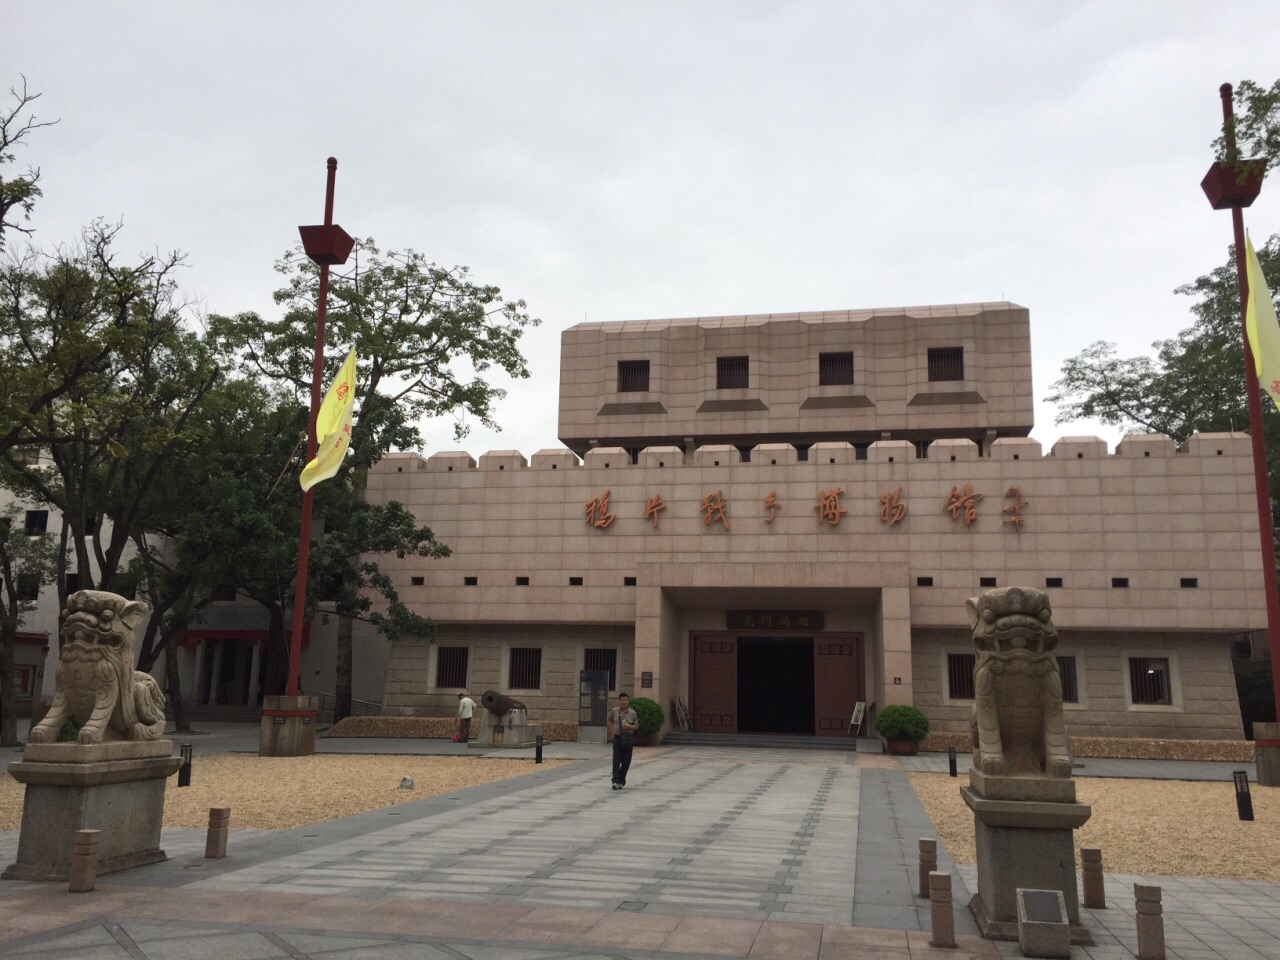 鸦片战争博物馆 - 中国旅游资讯网365135.COM